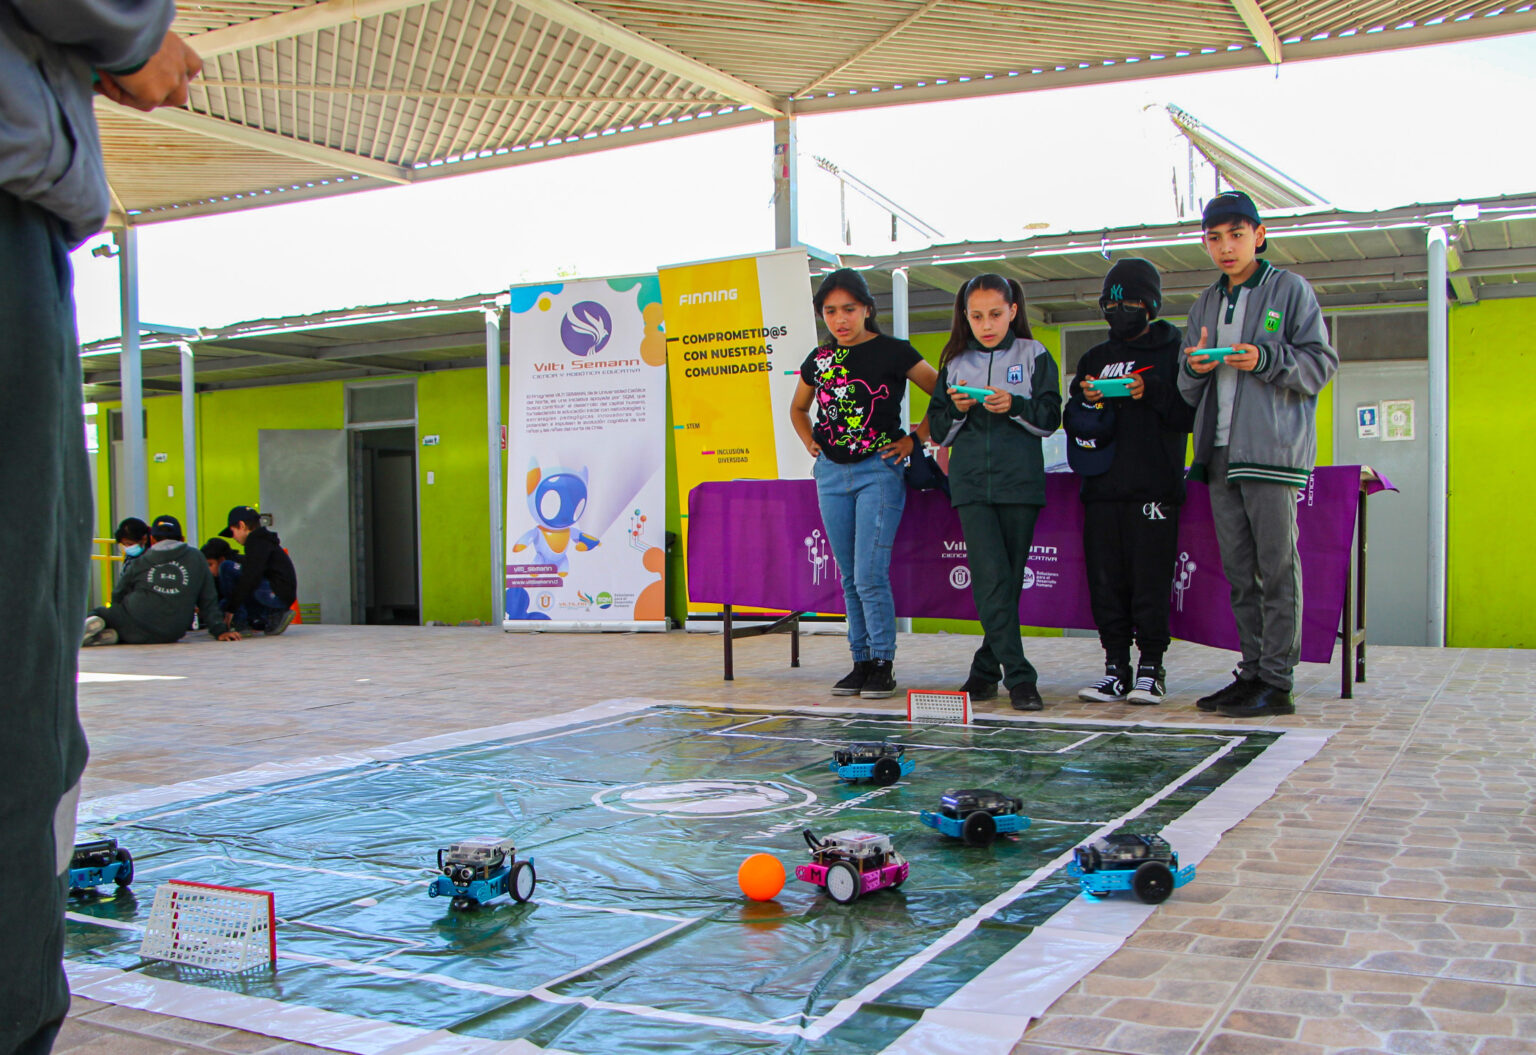 Ministro Hales, Finning y Universidad Católica del Norte despiertan interés por robótica con taller dirigido a estudiantes de Calama y Alto El Loa